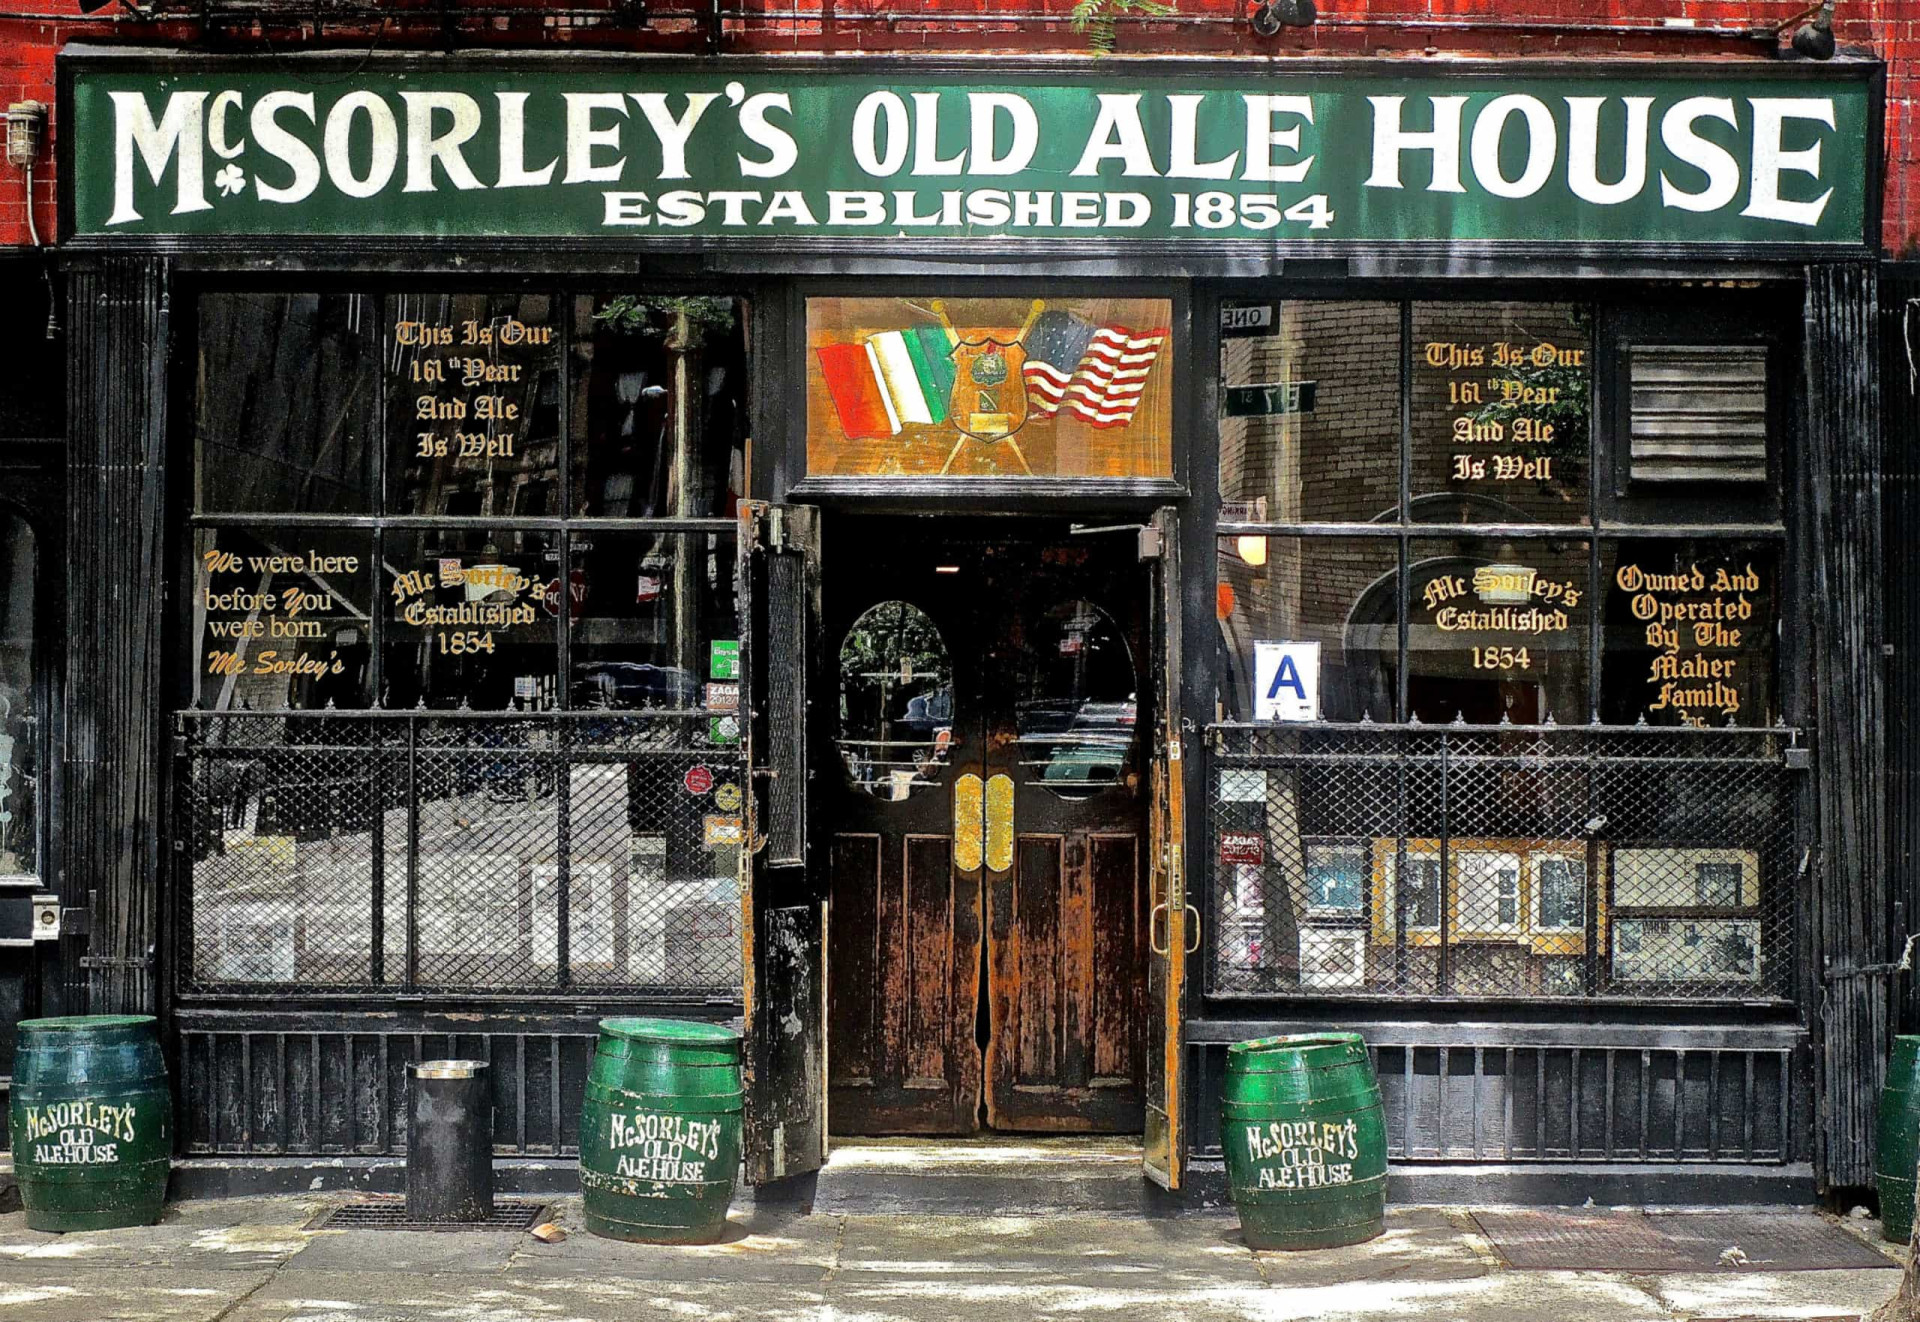 <p>Cet authentique saloon irlandais est l'un des plus anciens pubs de New York, fondé au milieu du 19ème siècle. Aucun décor intérieur n'a été enlevé ou remplacé depuis 1910, ce qui permet, grâce au <em>McSorley,</em> de faire un retour dans le temps.</p><p><a href="https://www.msn.com/fr-fr/community/channel/vid-7xx8mnucu55yw63we9va2gwr7uihbxwc68fxqp25x6tg4ftibpra?cvid=94631541bc0f4f89bfd59158d696ad7e">Suivez-nous et accédez tous les jours à du contenu exclusif</a></p>